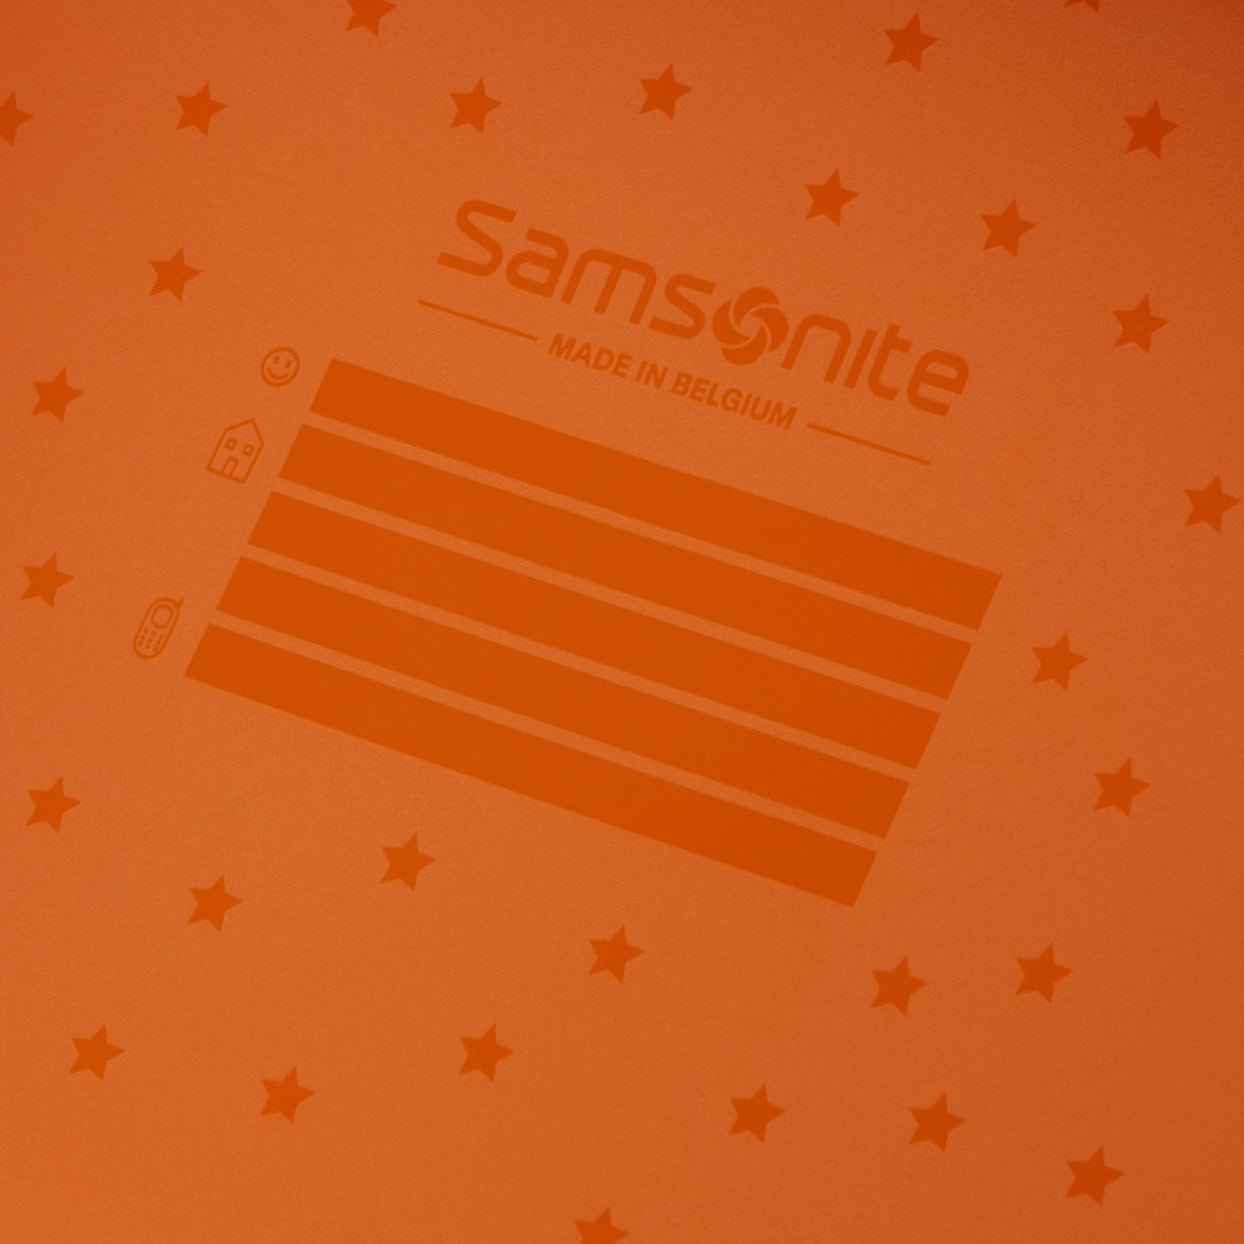 Samsonite Dream2Go Ride-On Suitcase 52 cm - Tiger T.